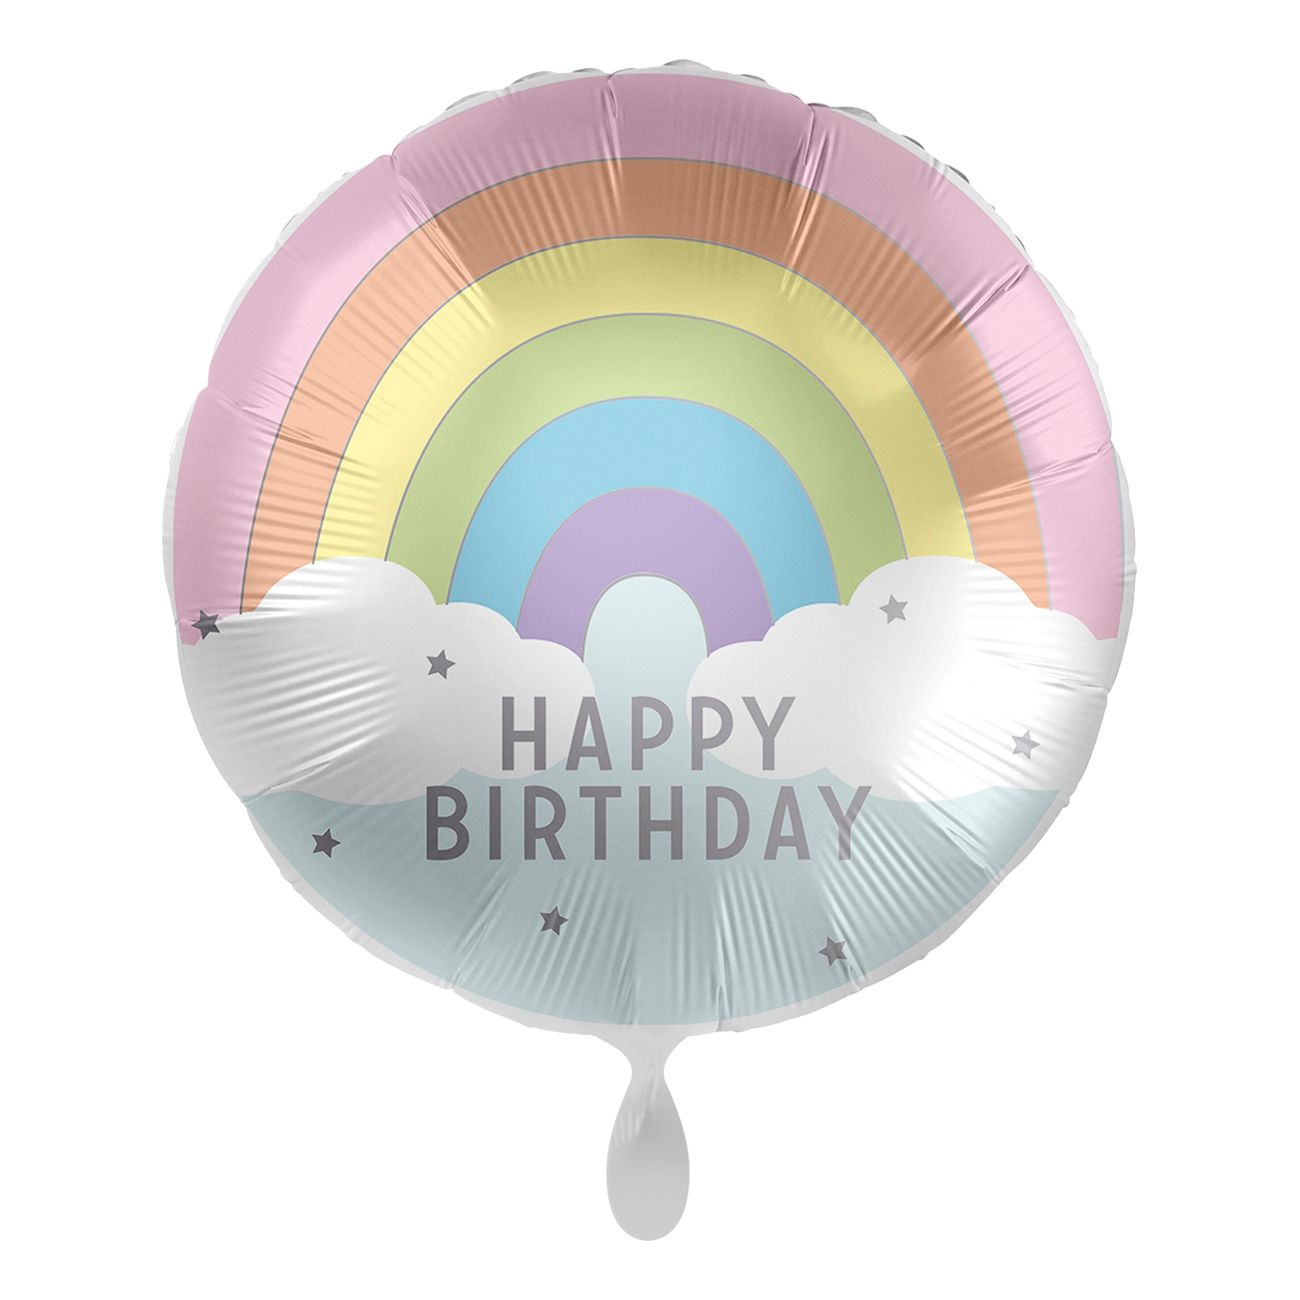 folieballong-happy-birthday-100164-2